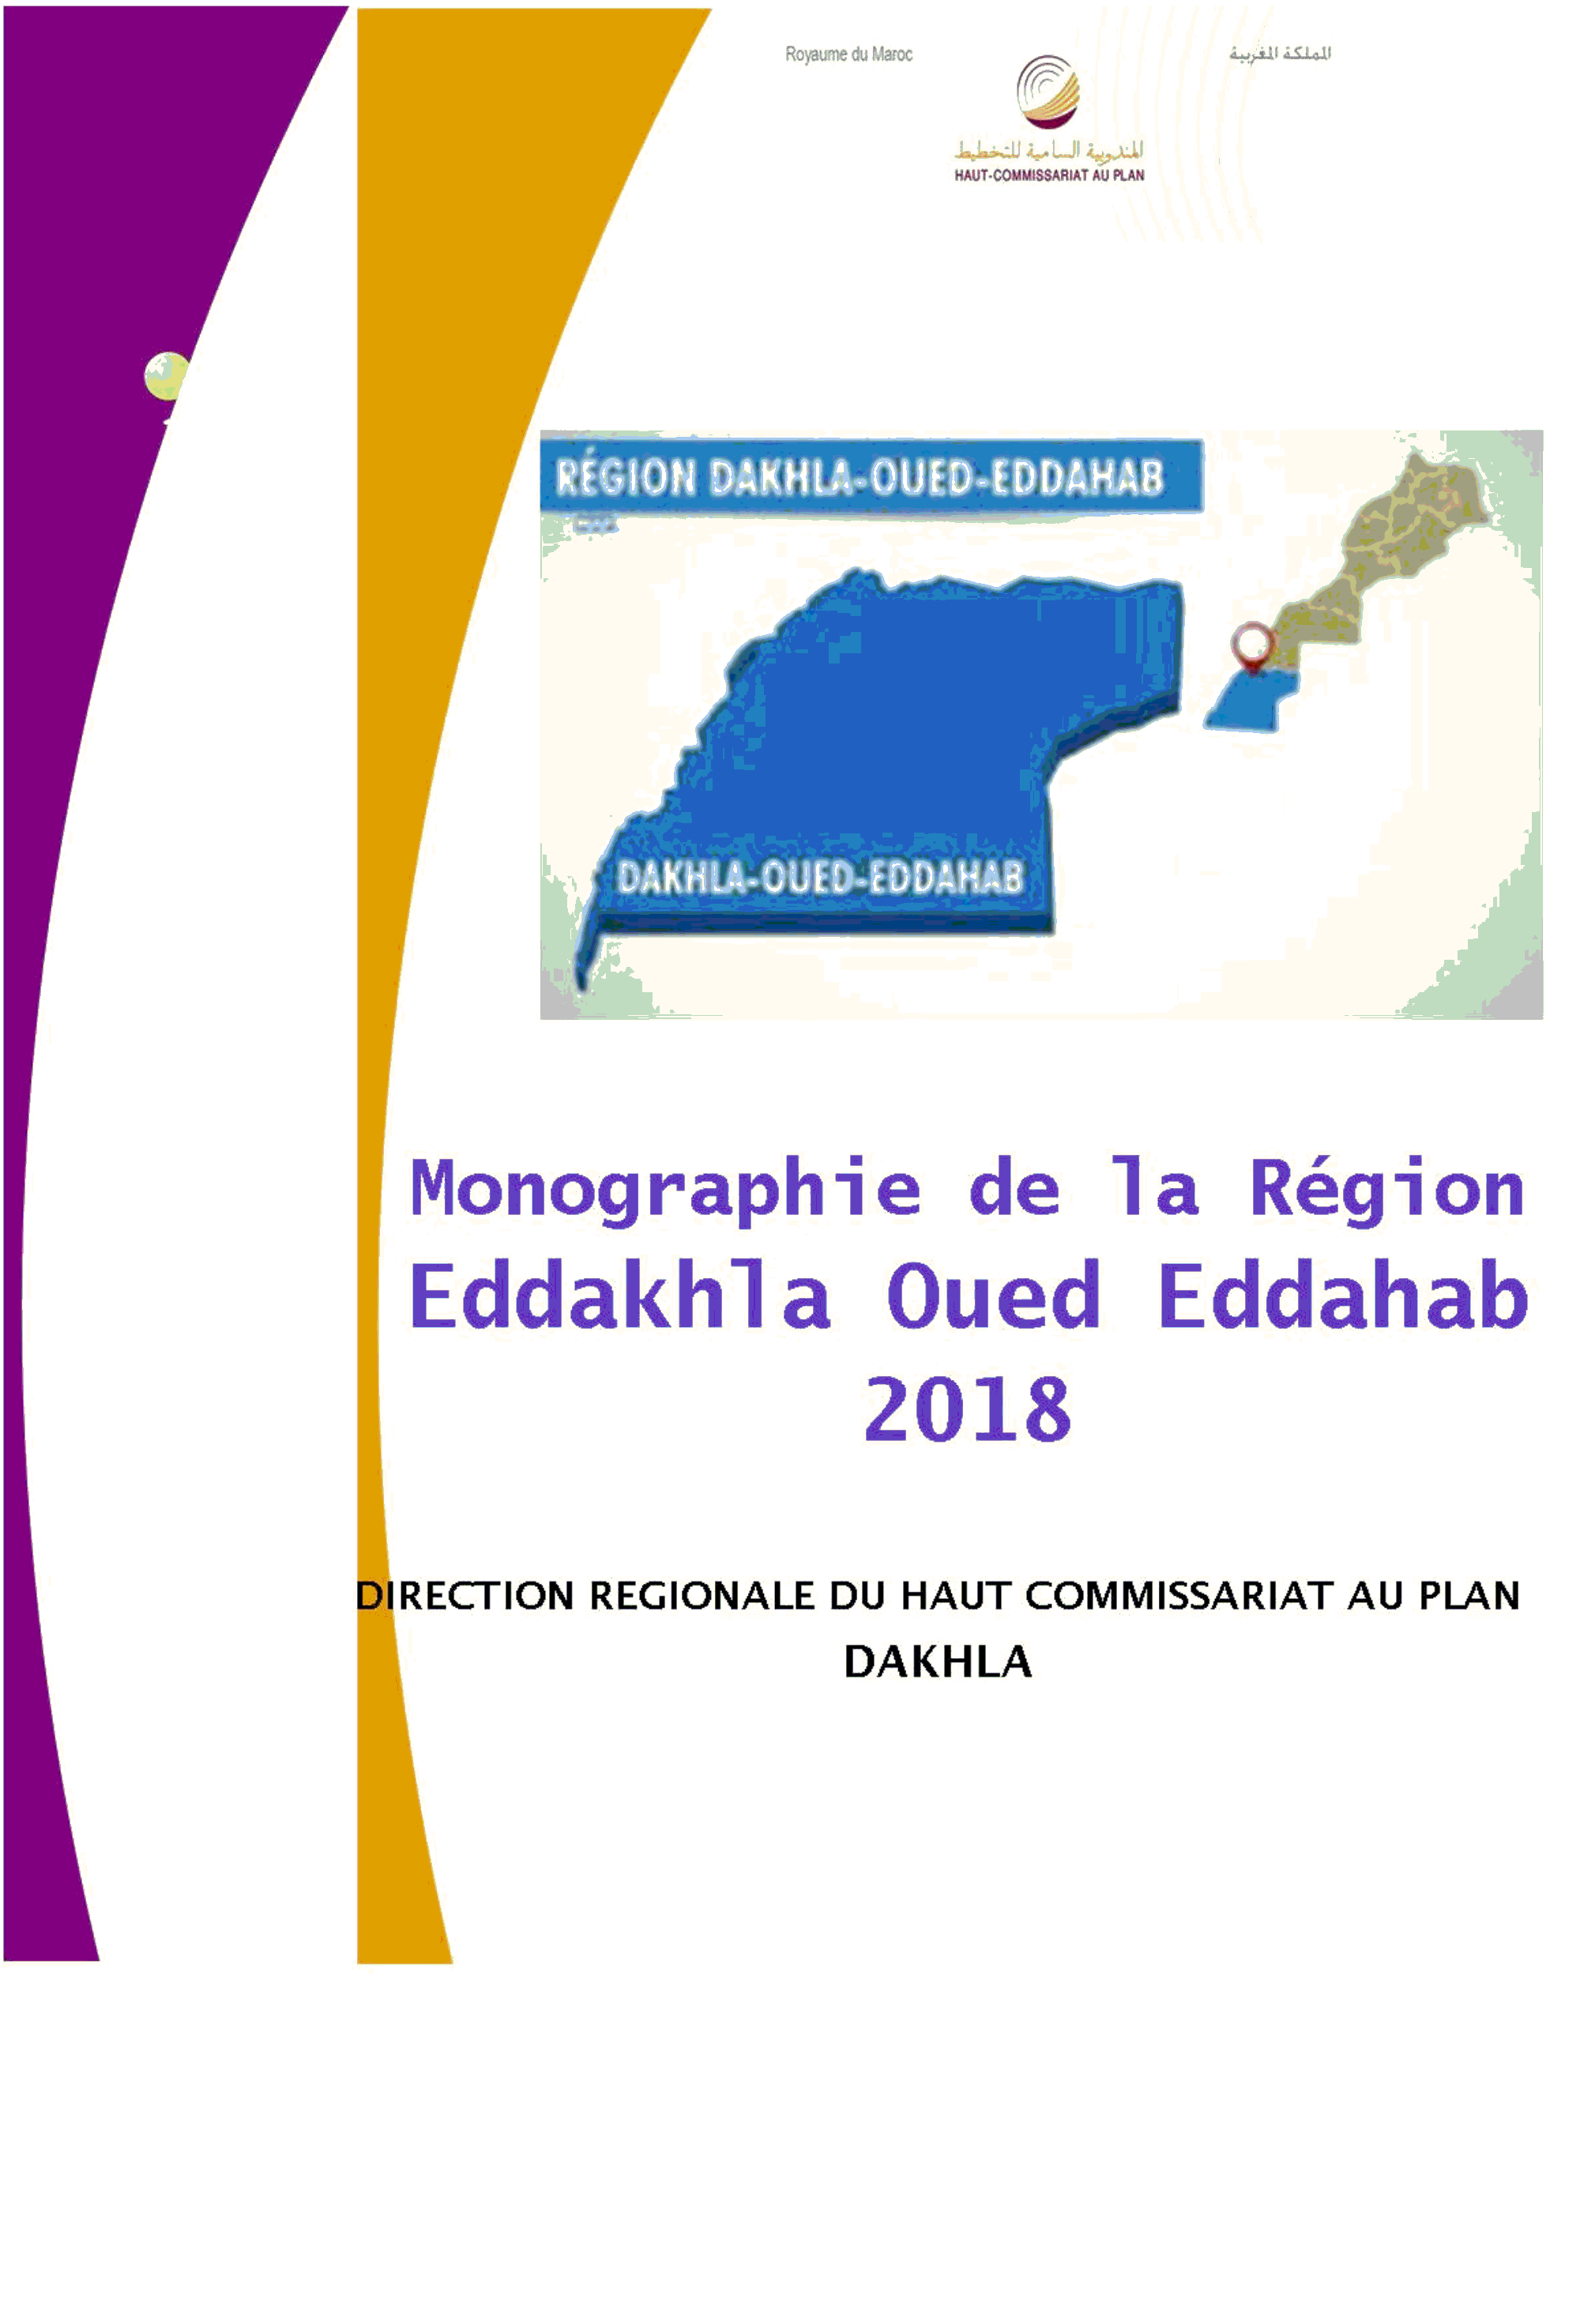 https://www.hcp.ma/region-eddakhla/Monographie-Regionale-edition-2018_a94.html